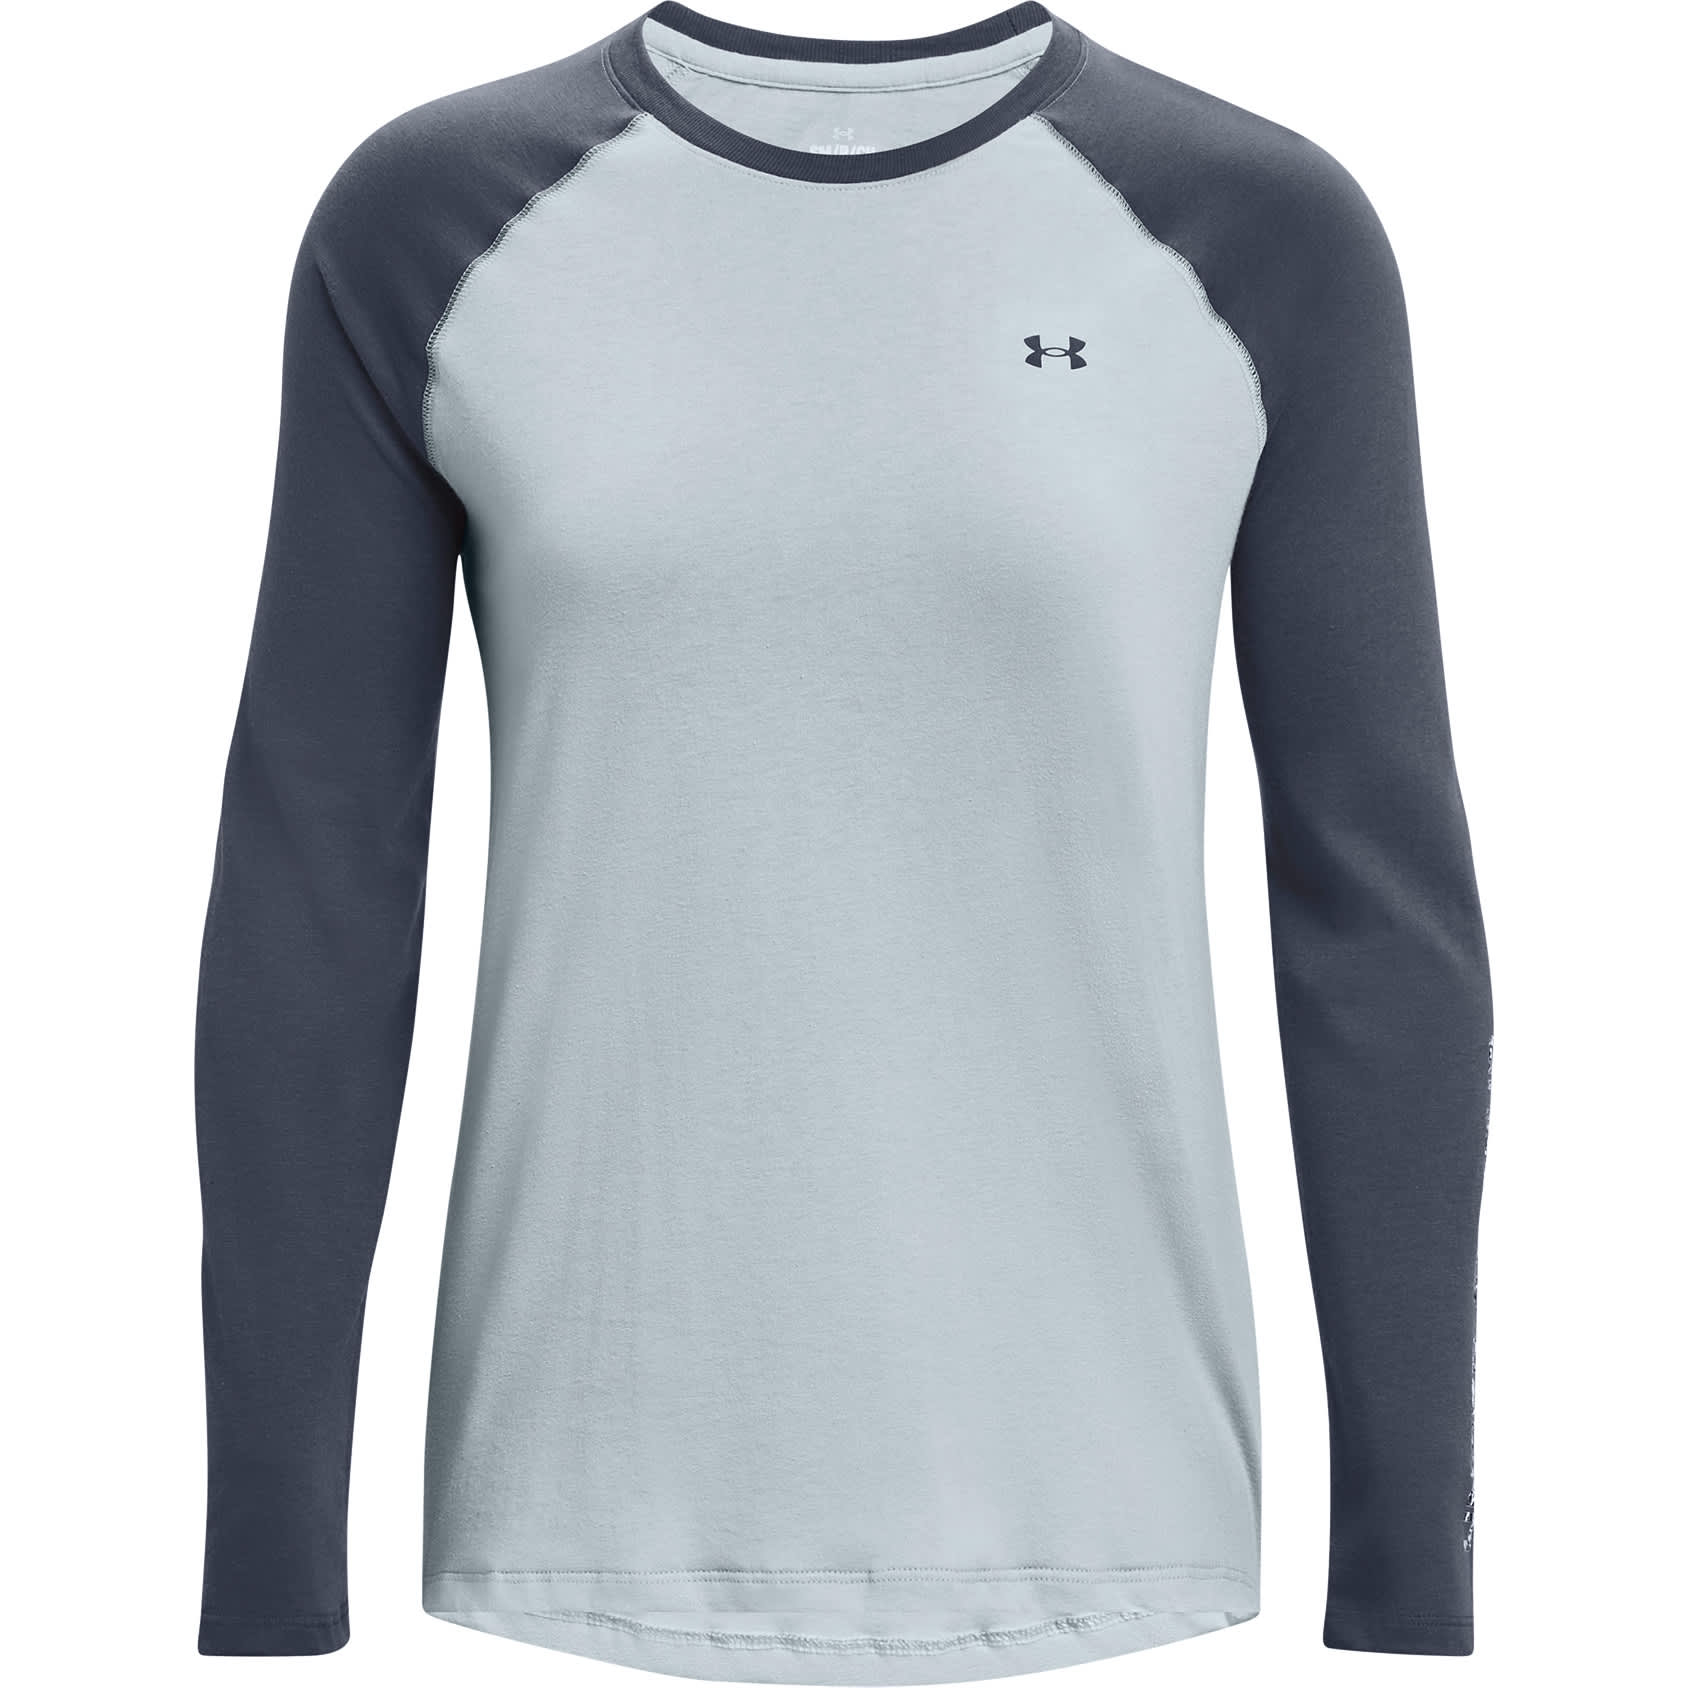 Under Armour® Women’s Outdoor Long-Sleeve T-Shirt